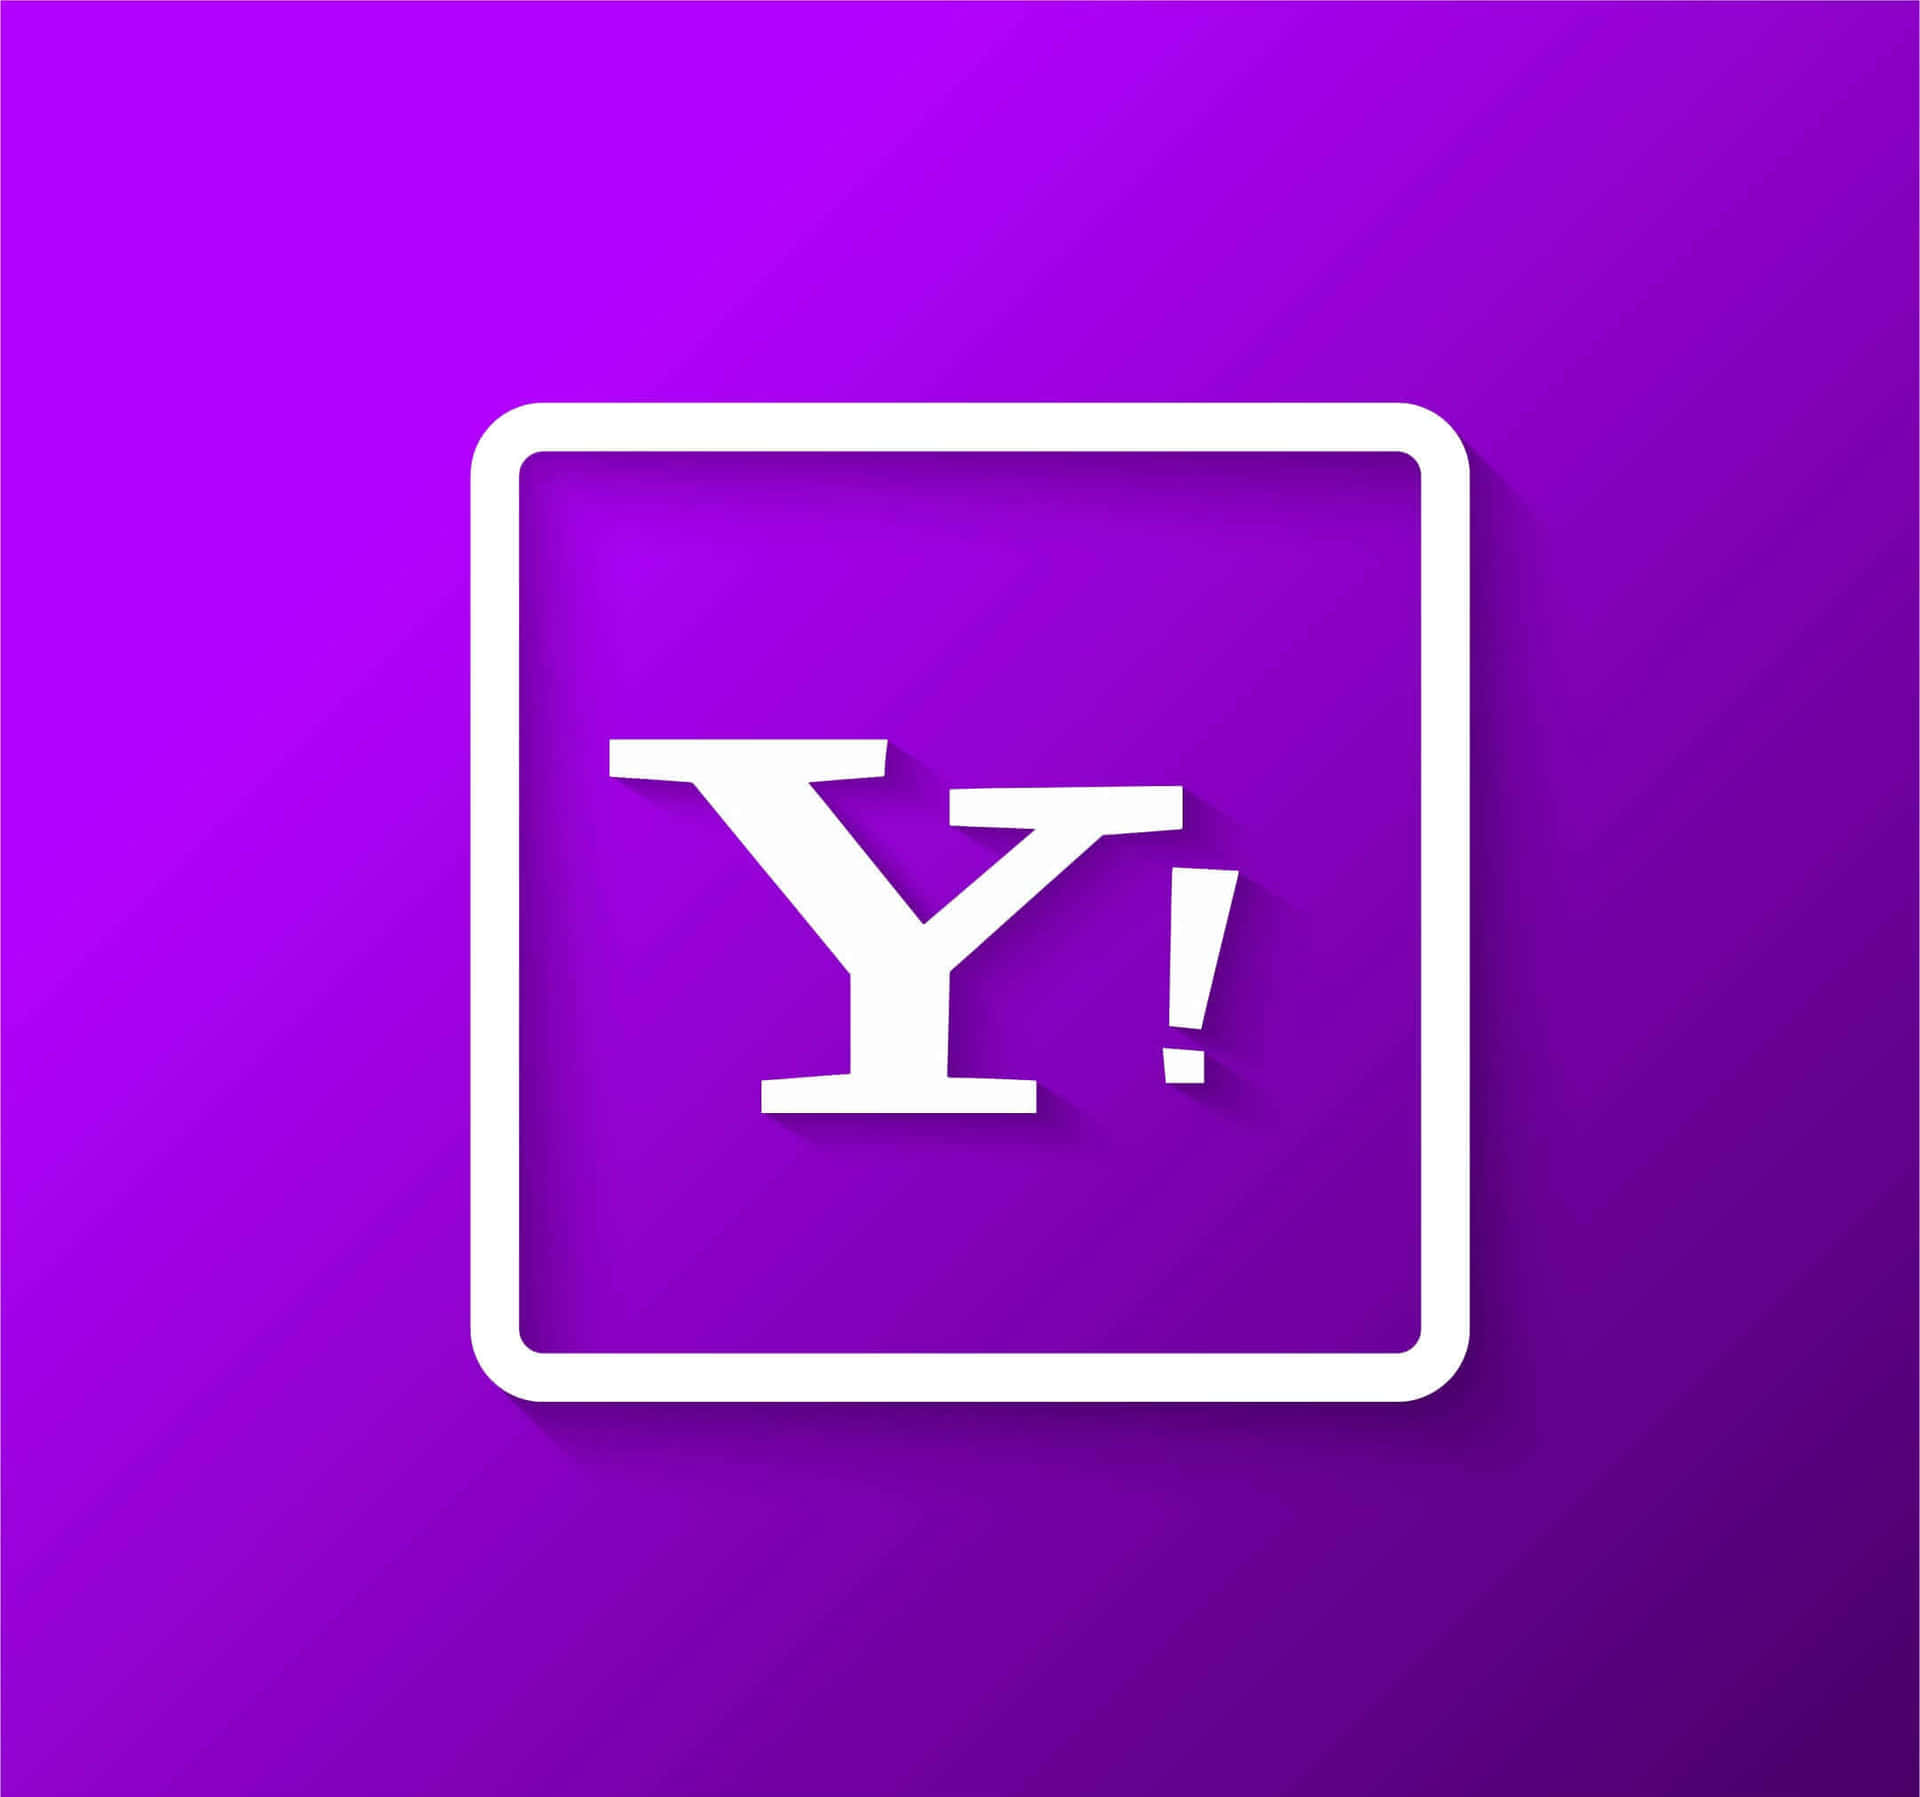 Yahooottieni Notizie Aggiornate, Informazioni Sullo Sport E Sulla Finanza.